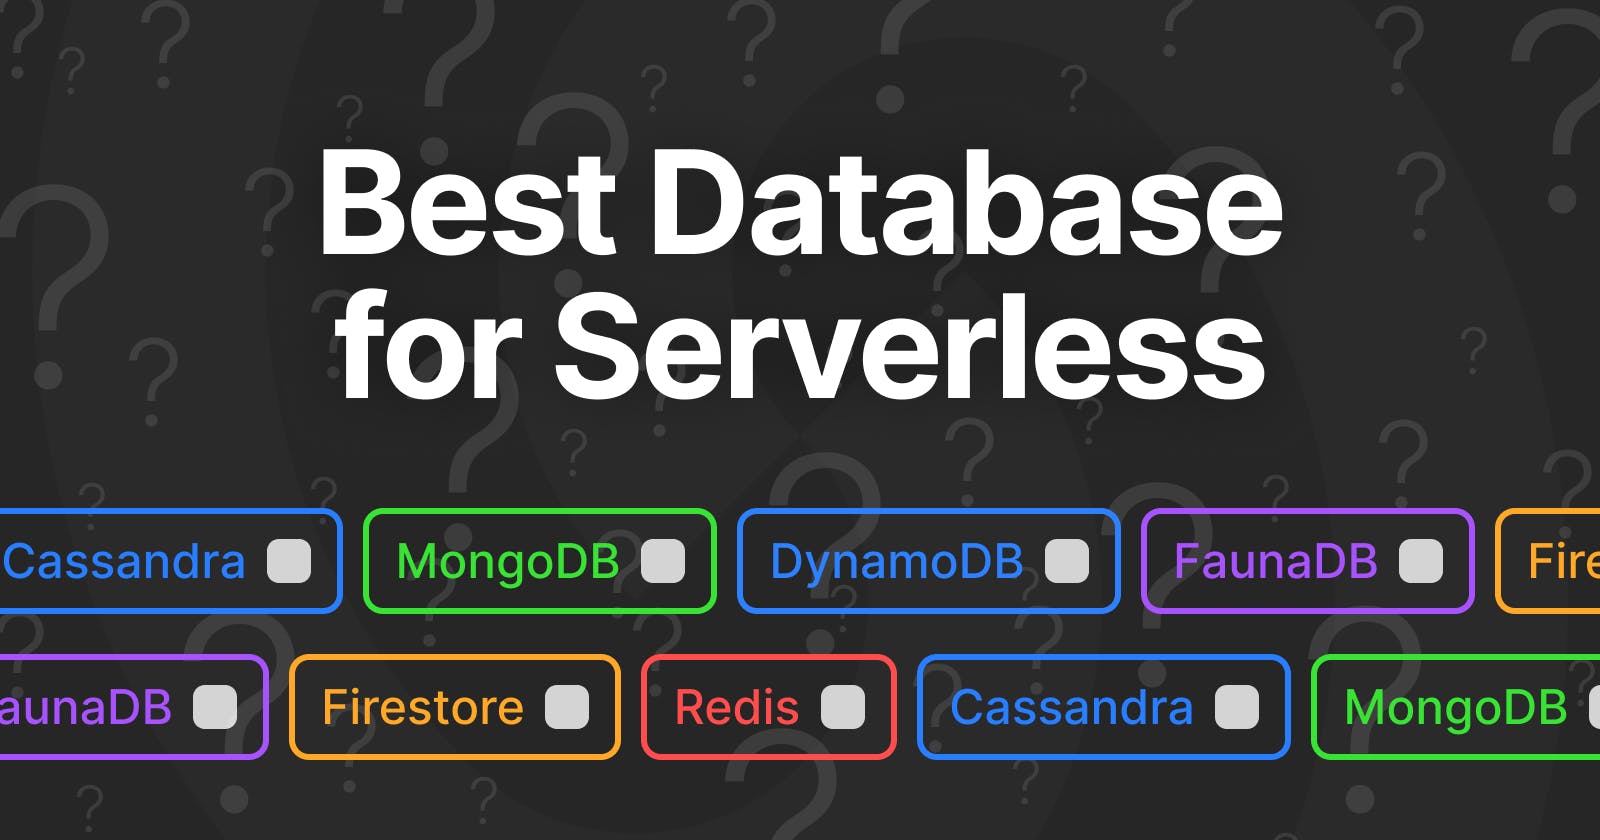 Best Databases for Serverless